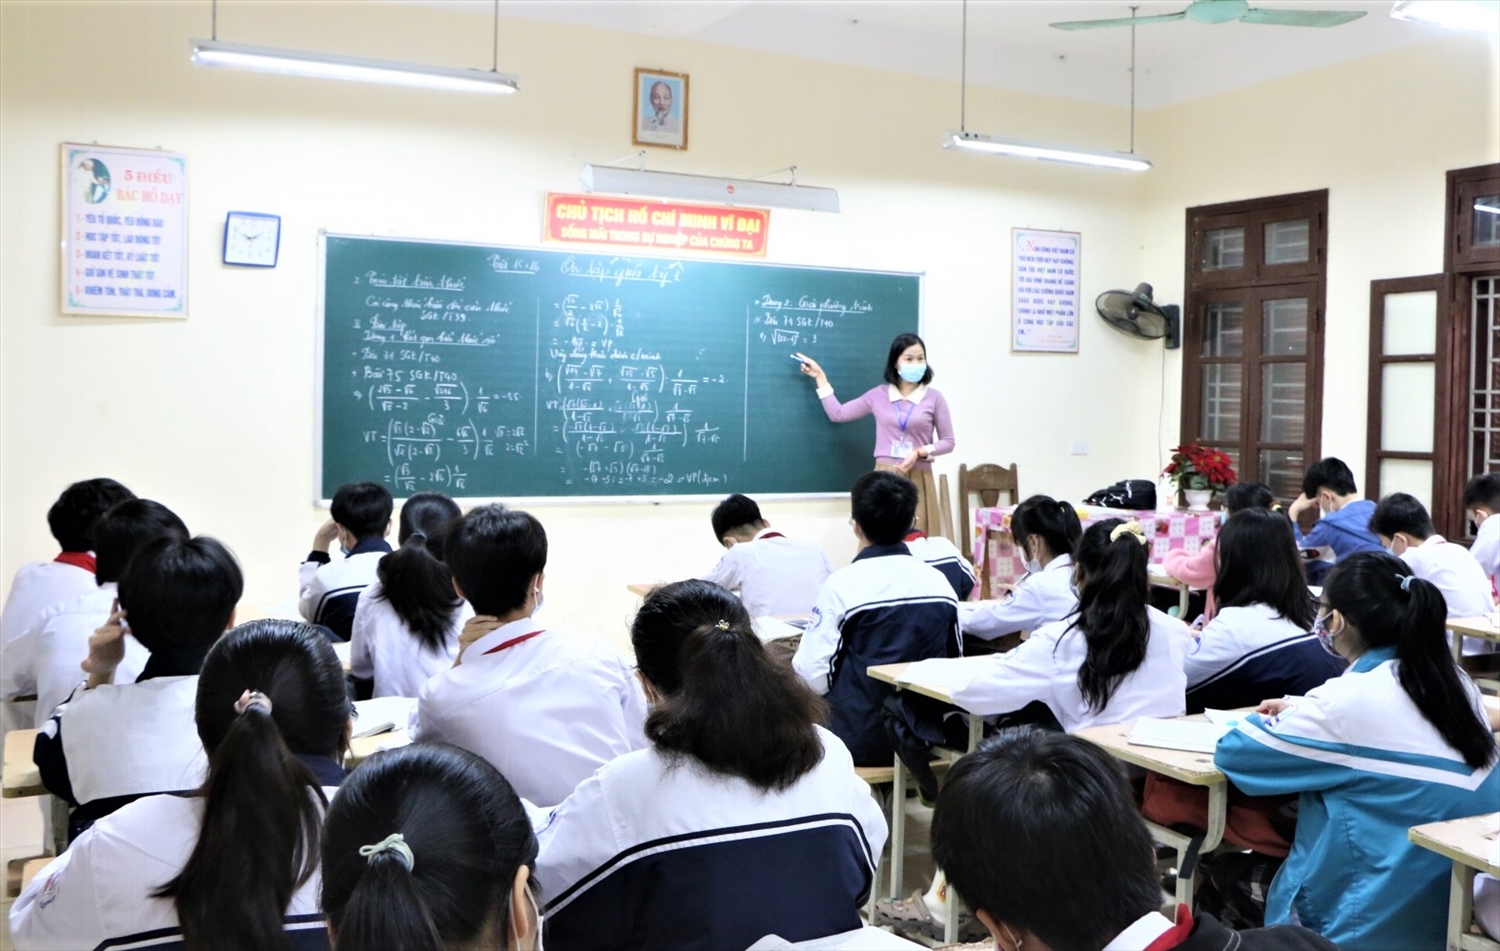  Học sinh ở nhiều xã, phường tại Hà Nội sẽ tạm ngừng đến trường khi dịch Covid-19 nâng lên cấp độ 3. cấp độ dịch nâng 